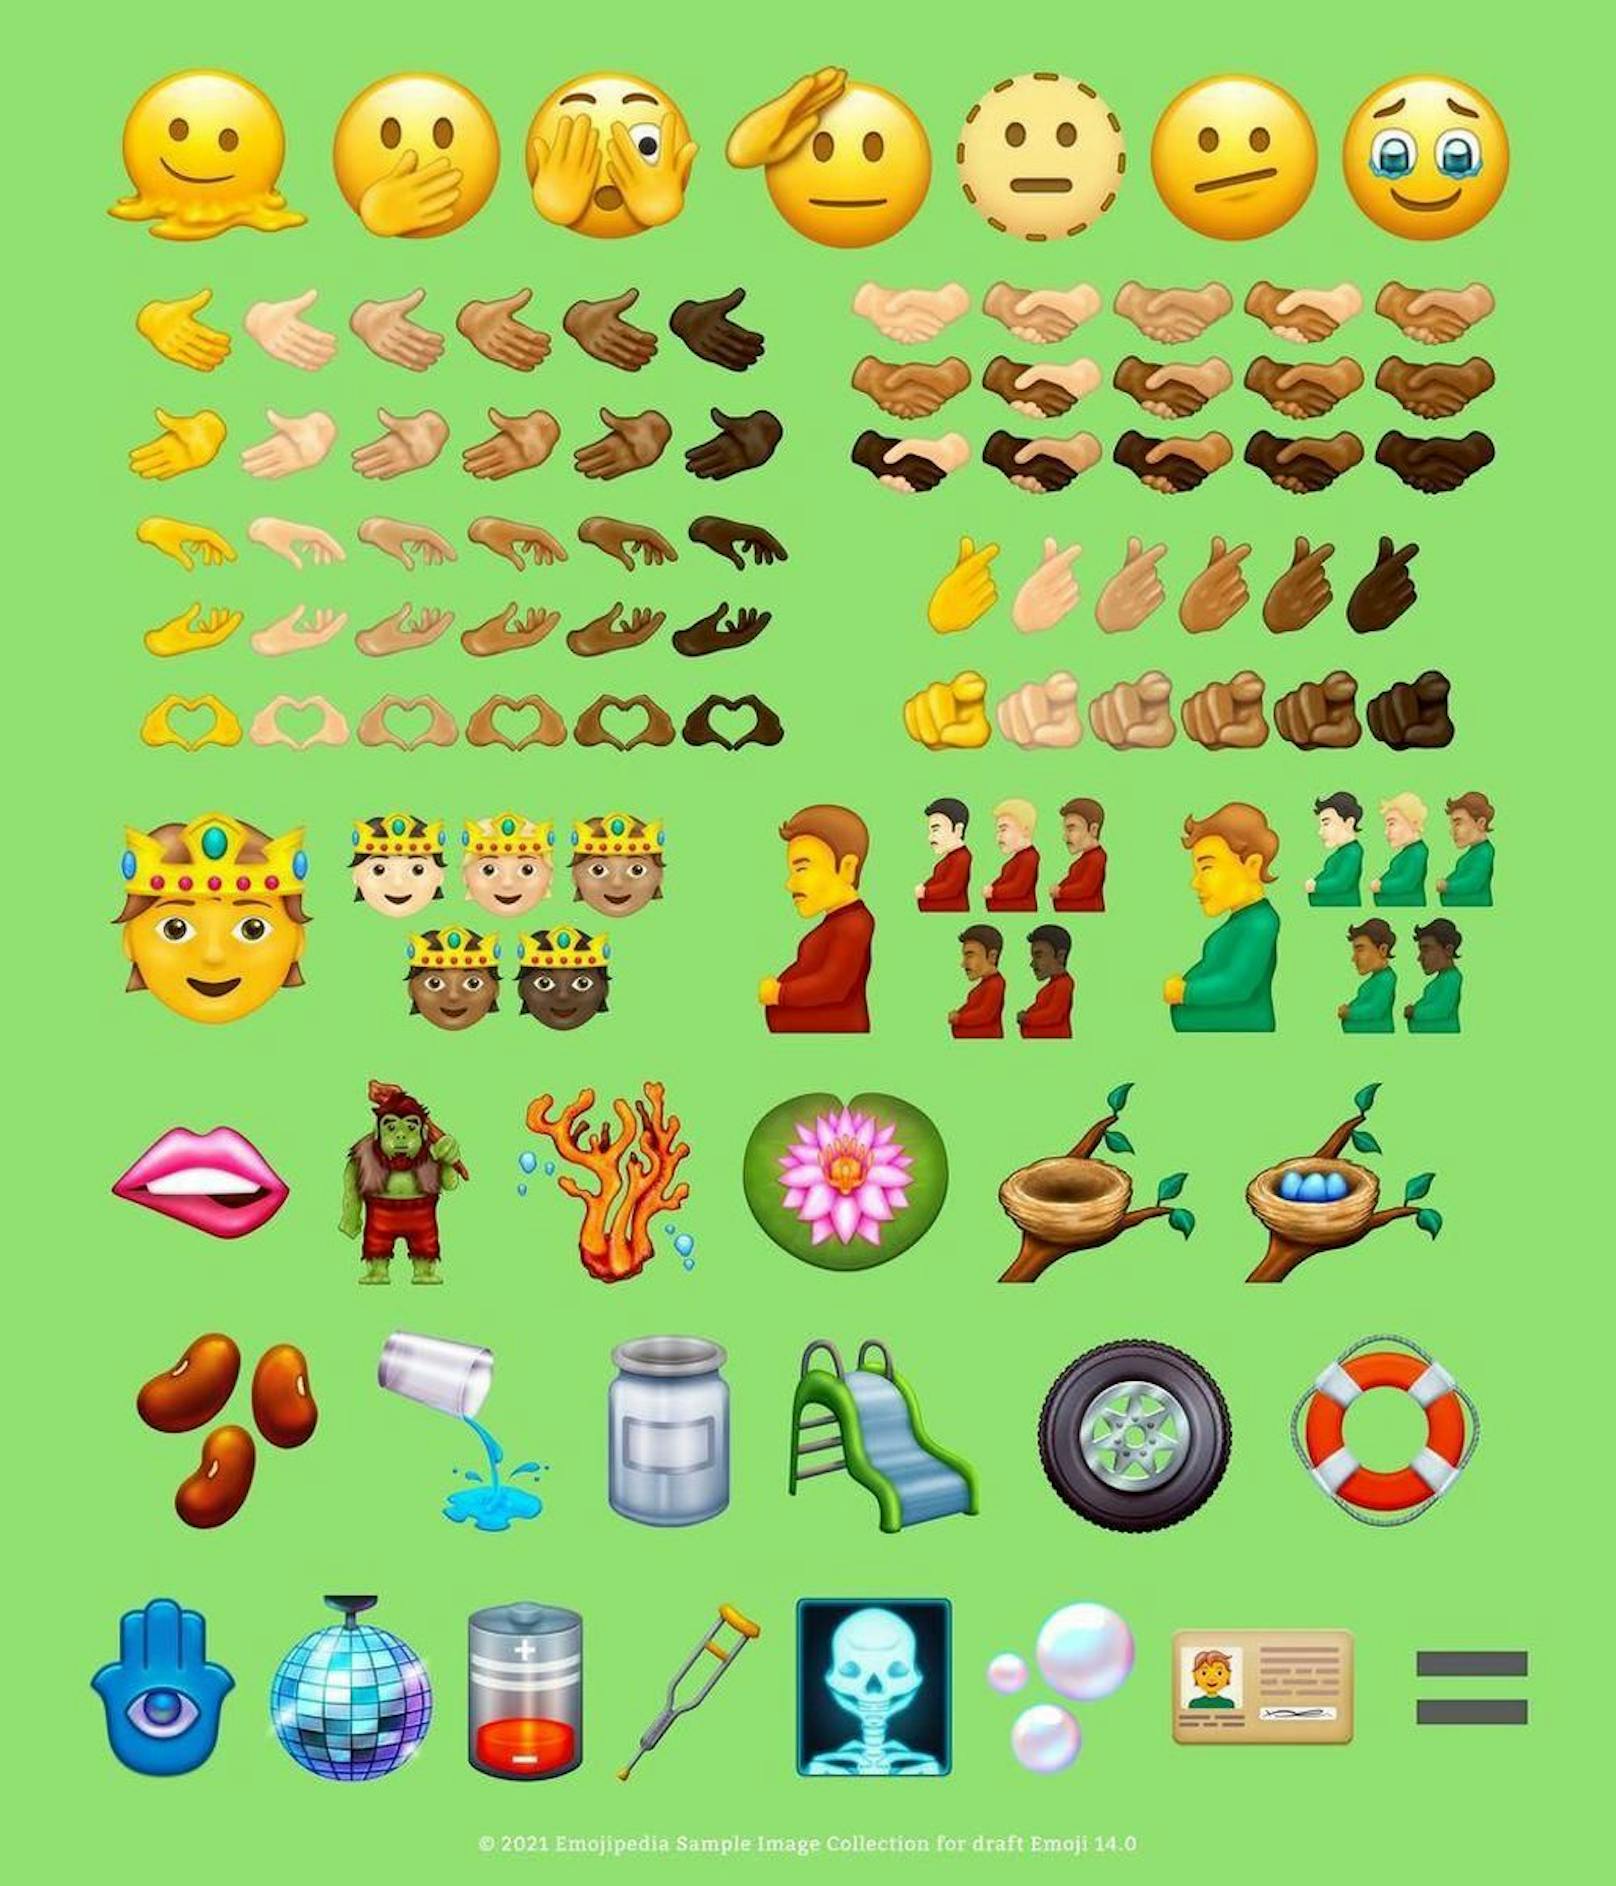 Hier sind alle neuen Emojis abgebildet.